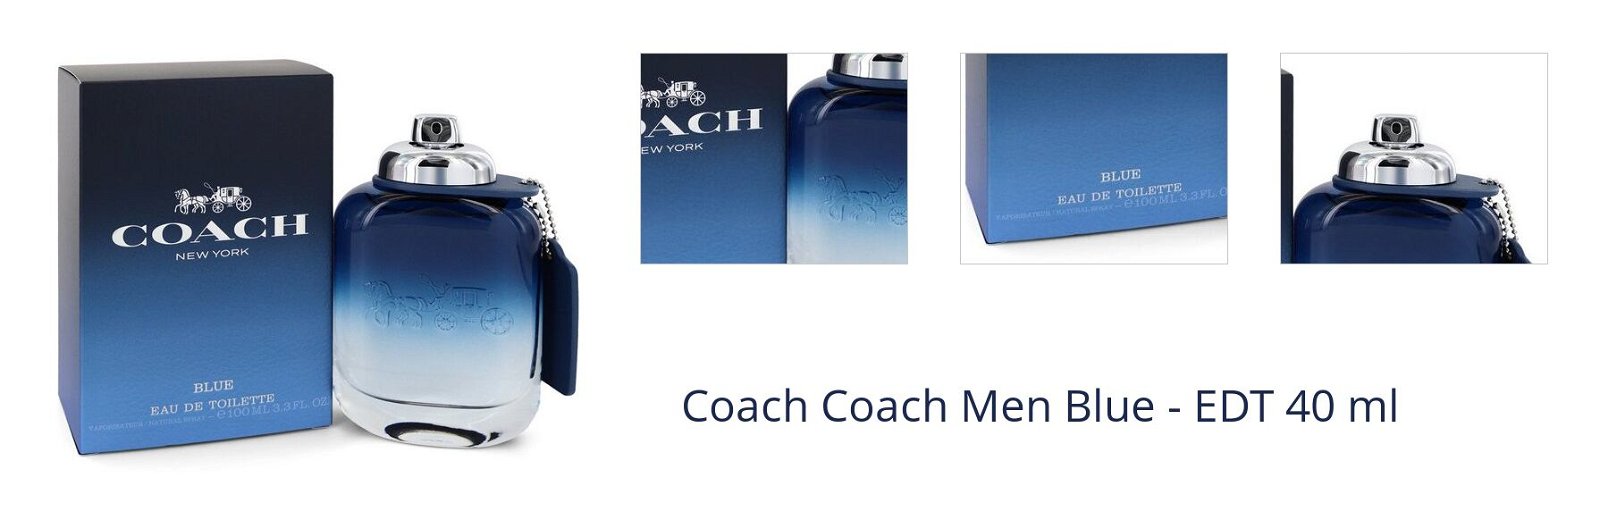 Coach Coach Men Blue - EDT 40 ml 1